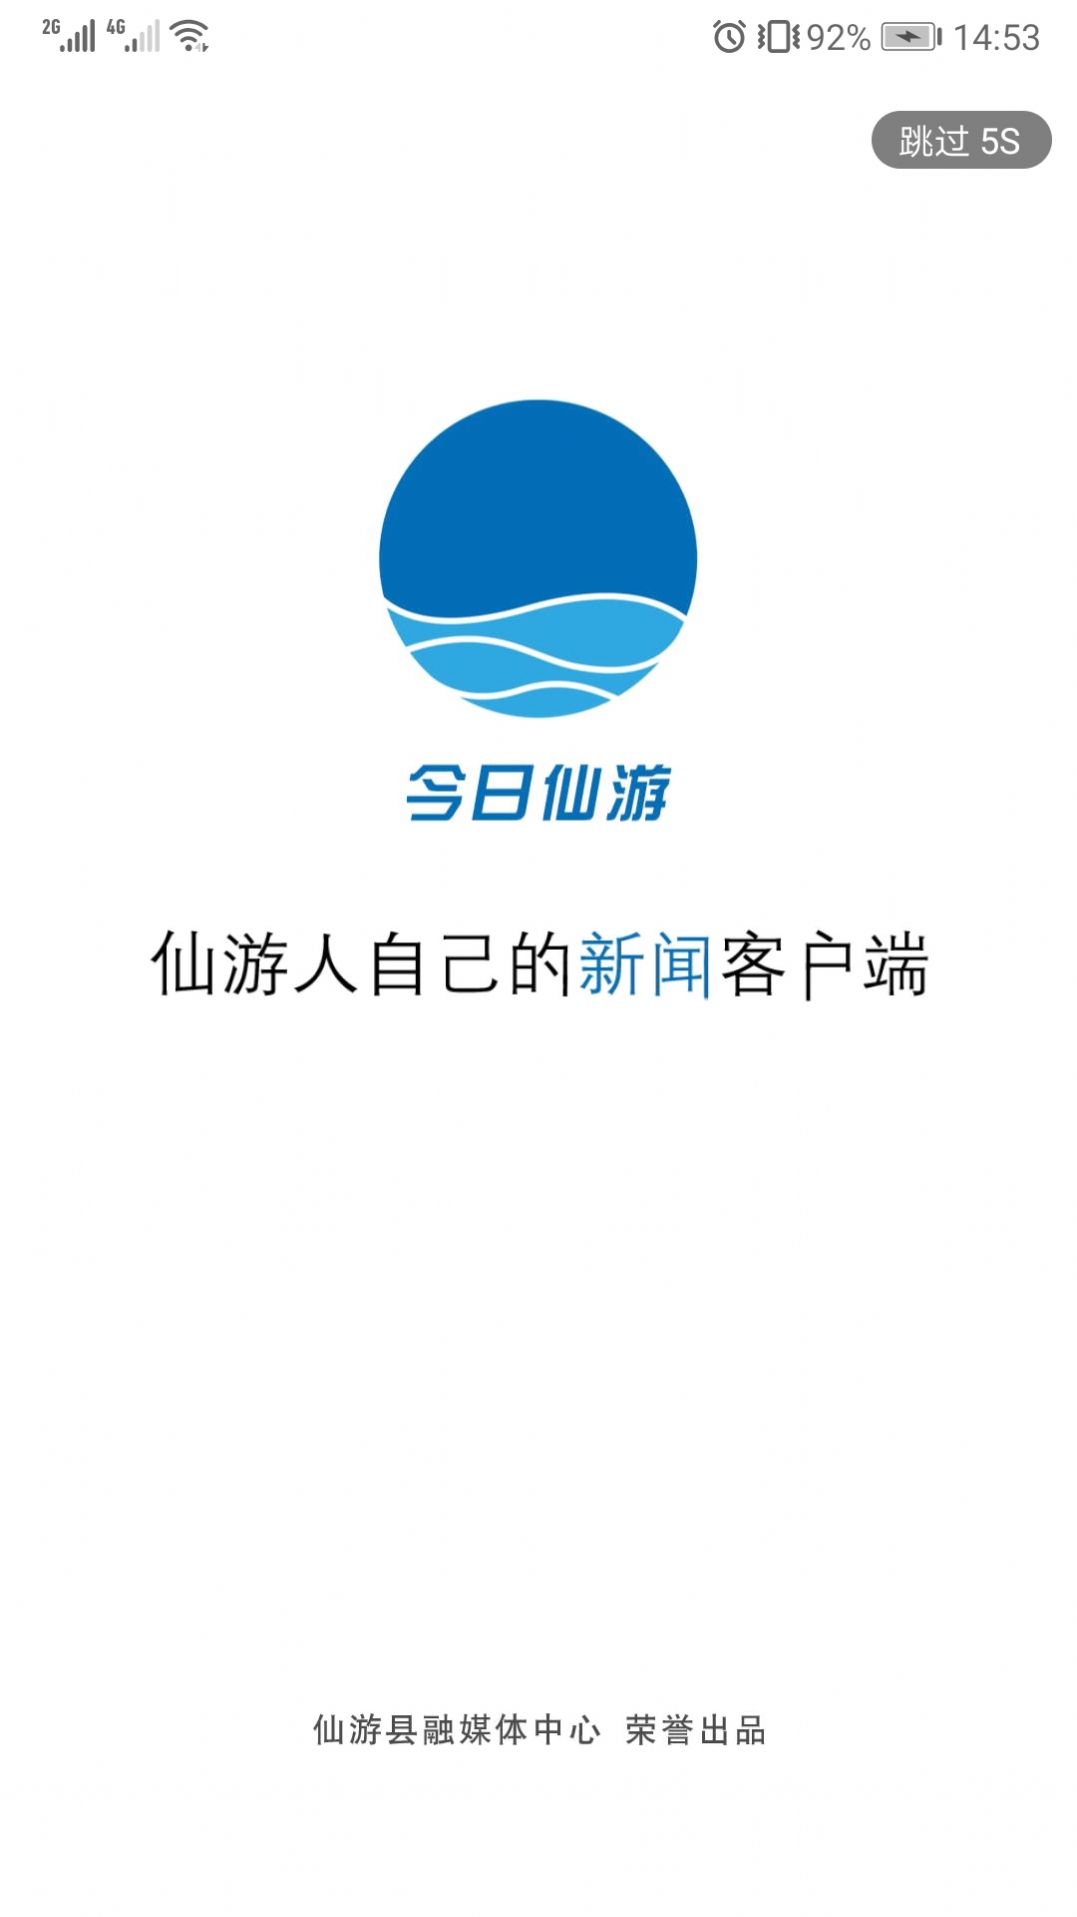 今日仙游融媒体最新版app图片1